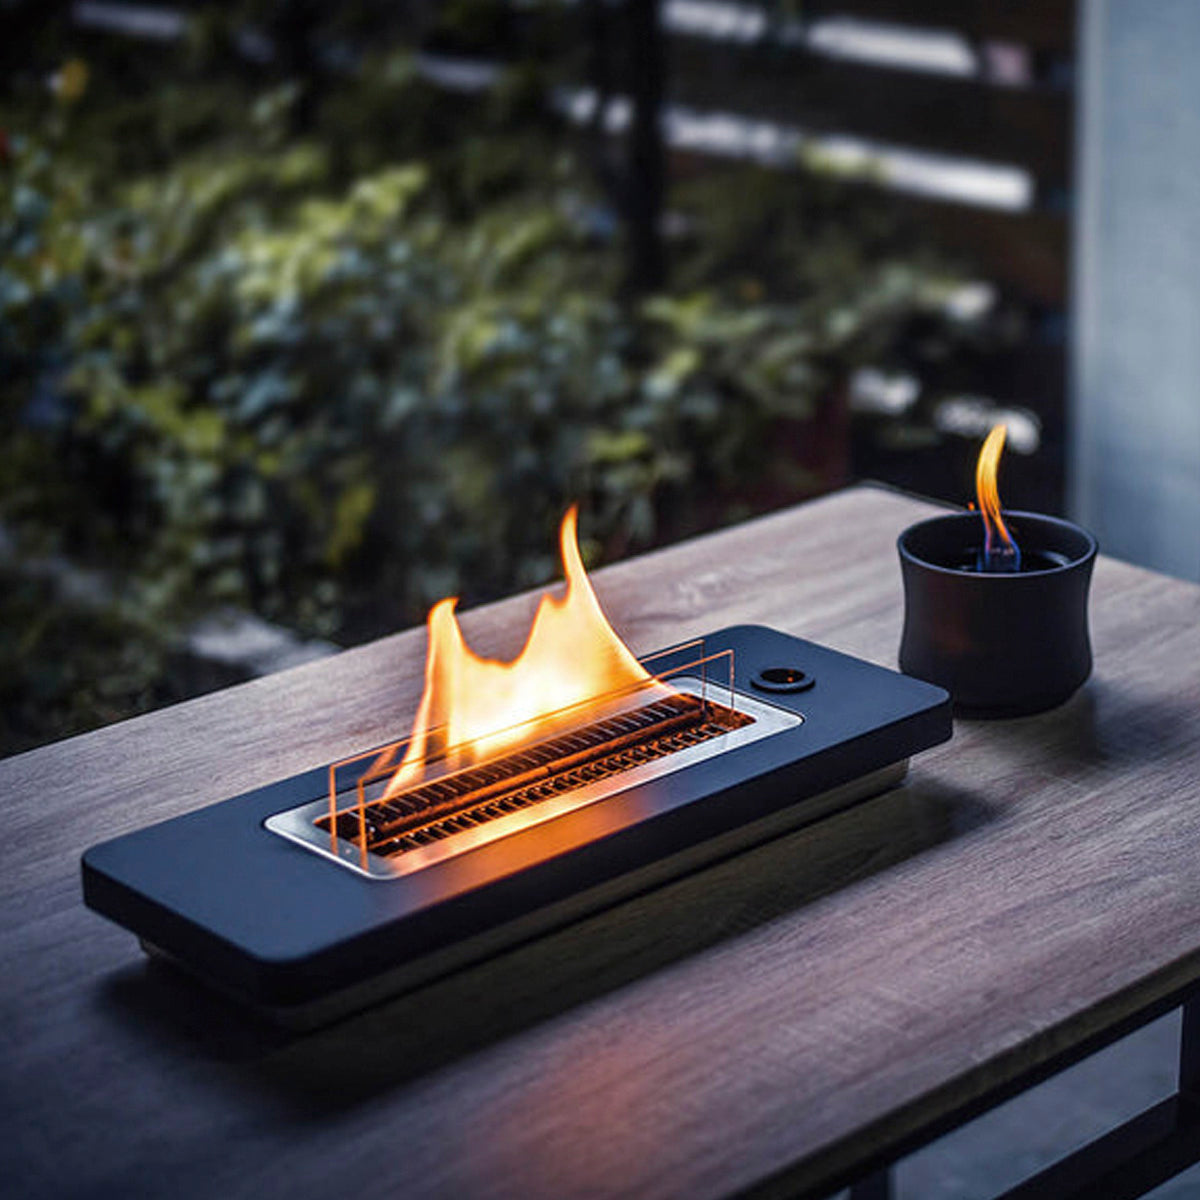 内容卓上型暖炉Lovinflame卓上暖炉 ラヴィンフレーム テーブルトップ180